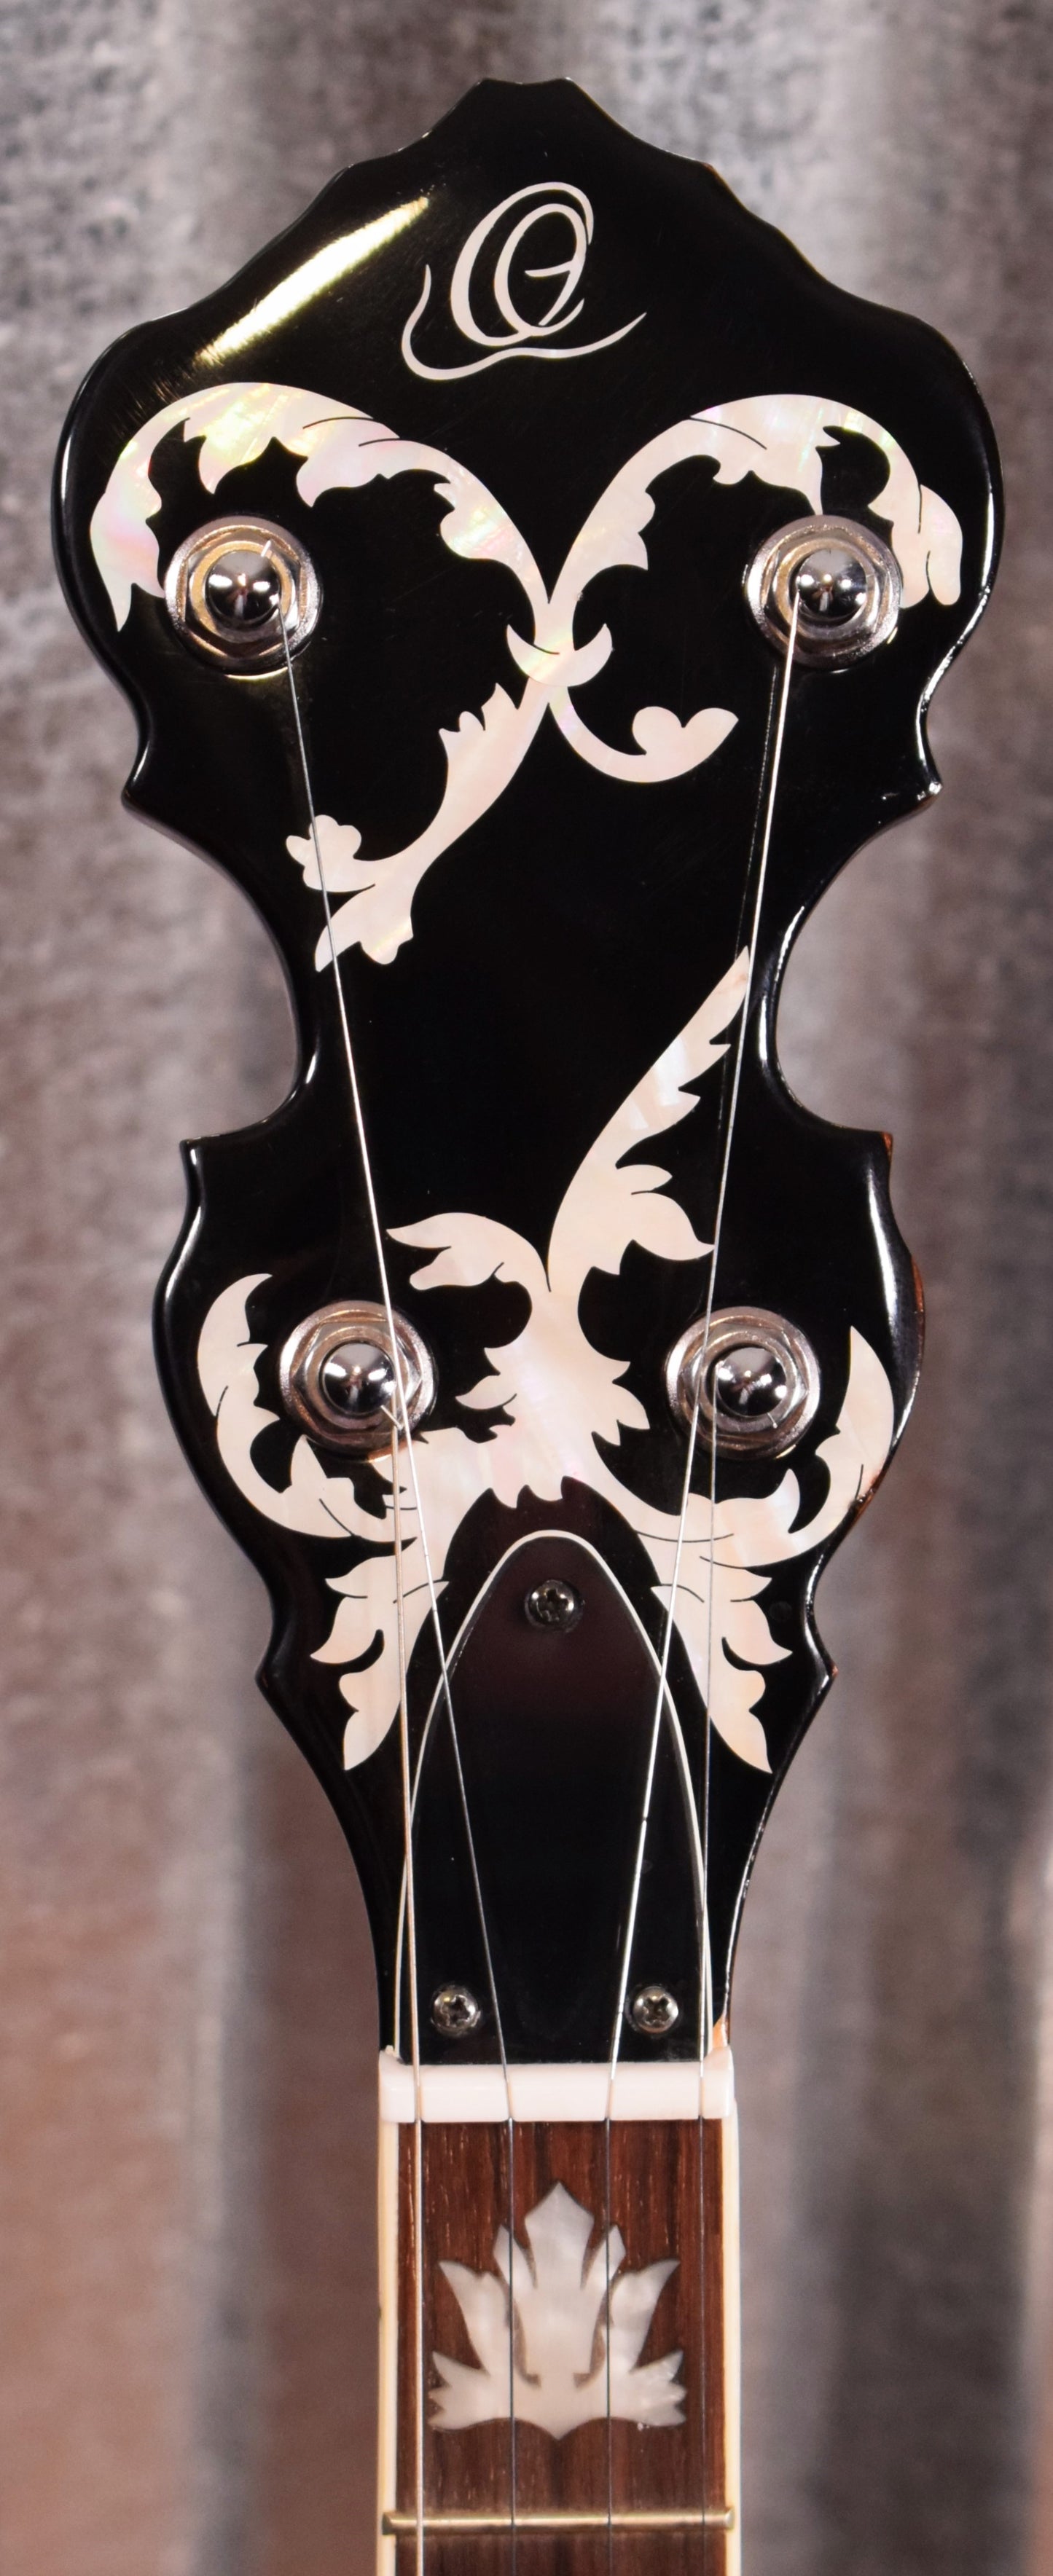 Ortega Guitars Falcon OBJ750-MA Flame Maple 5 String Banjo & Bag #0021 B Stock